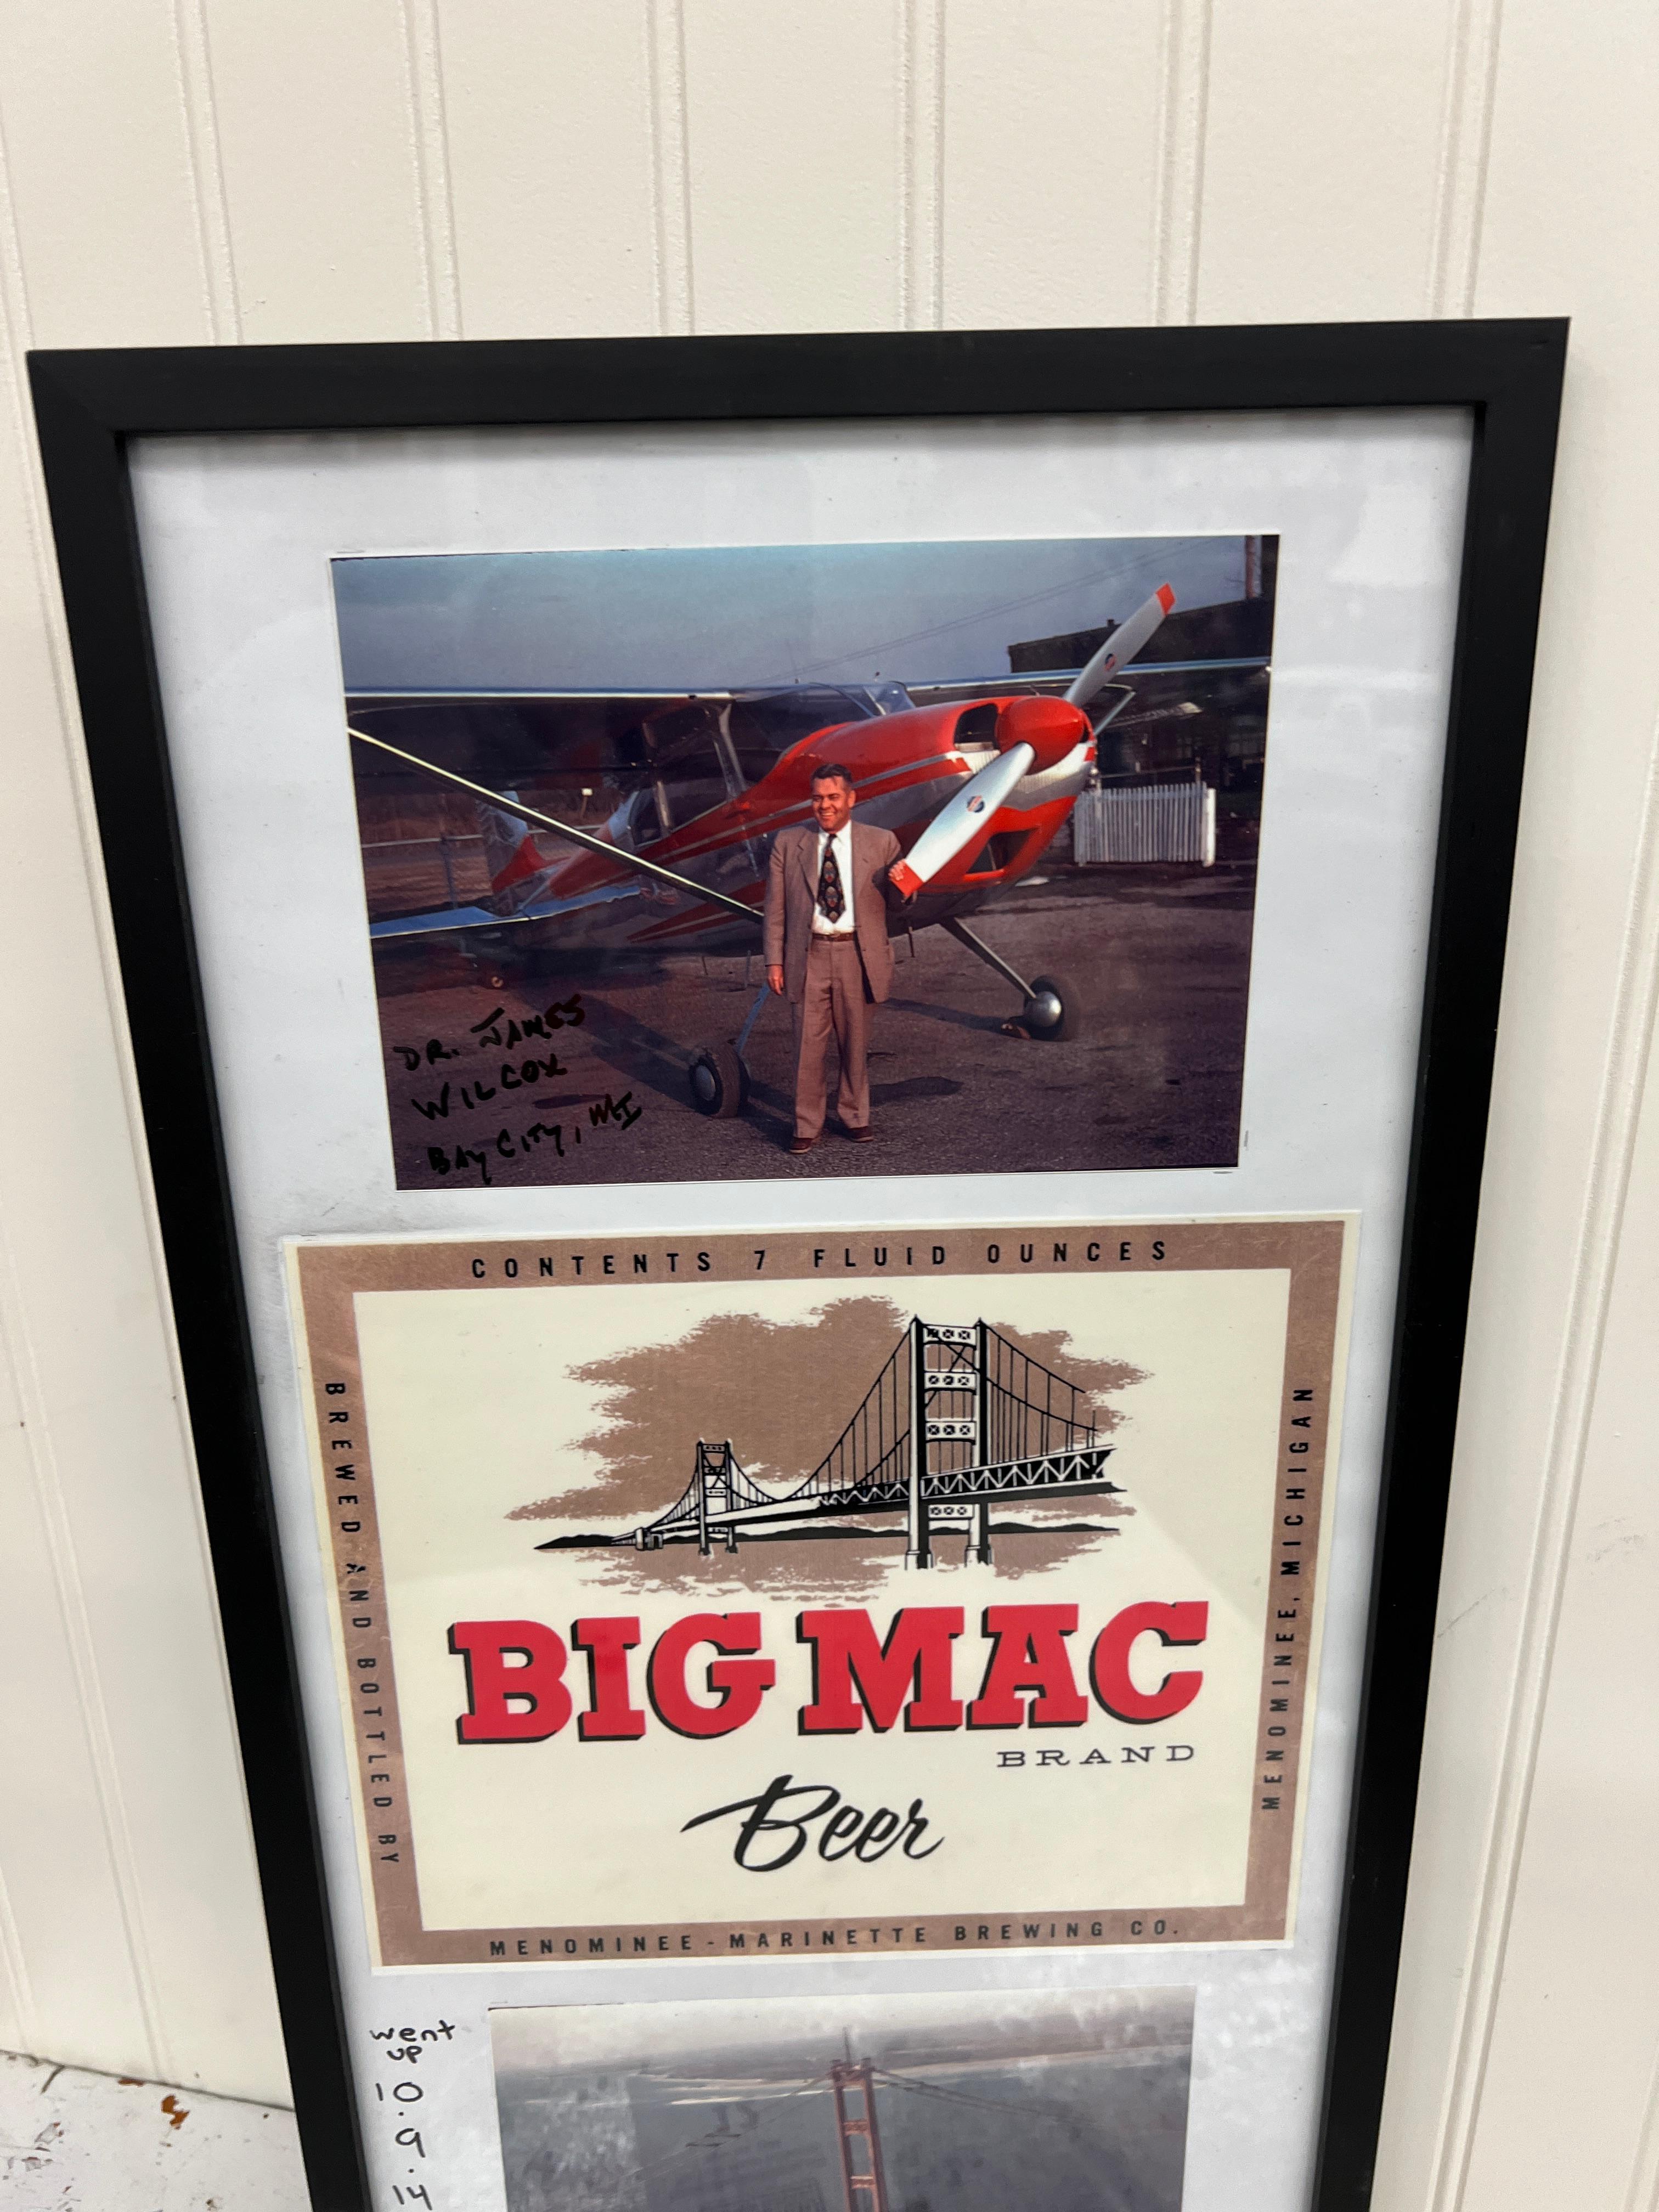 Big Mac Beer Brand Menominee Marinette Brewing Co. Framed pic of Mackinac Bridge being completed